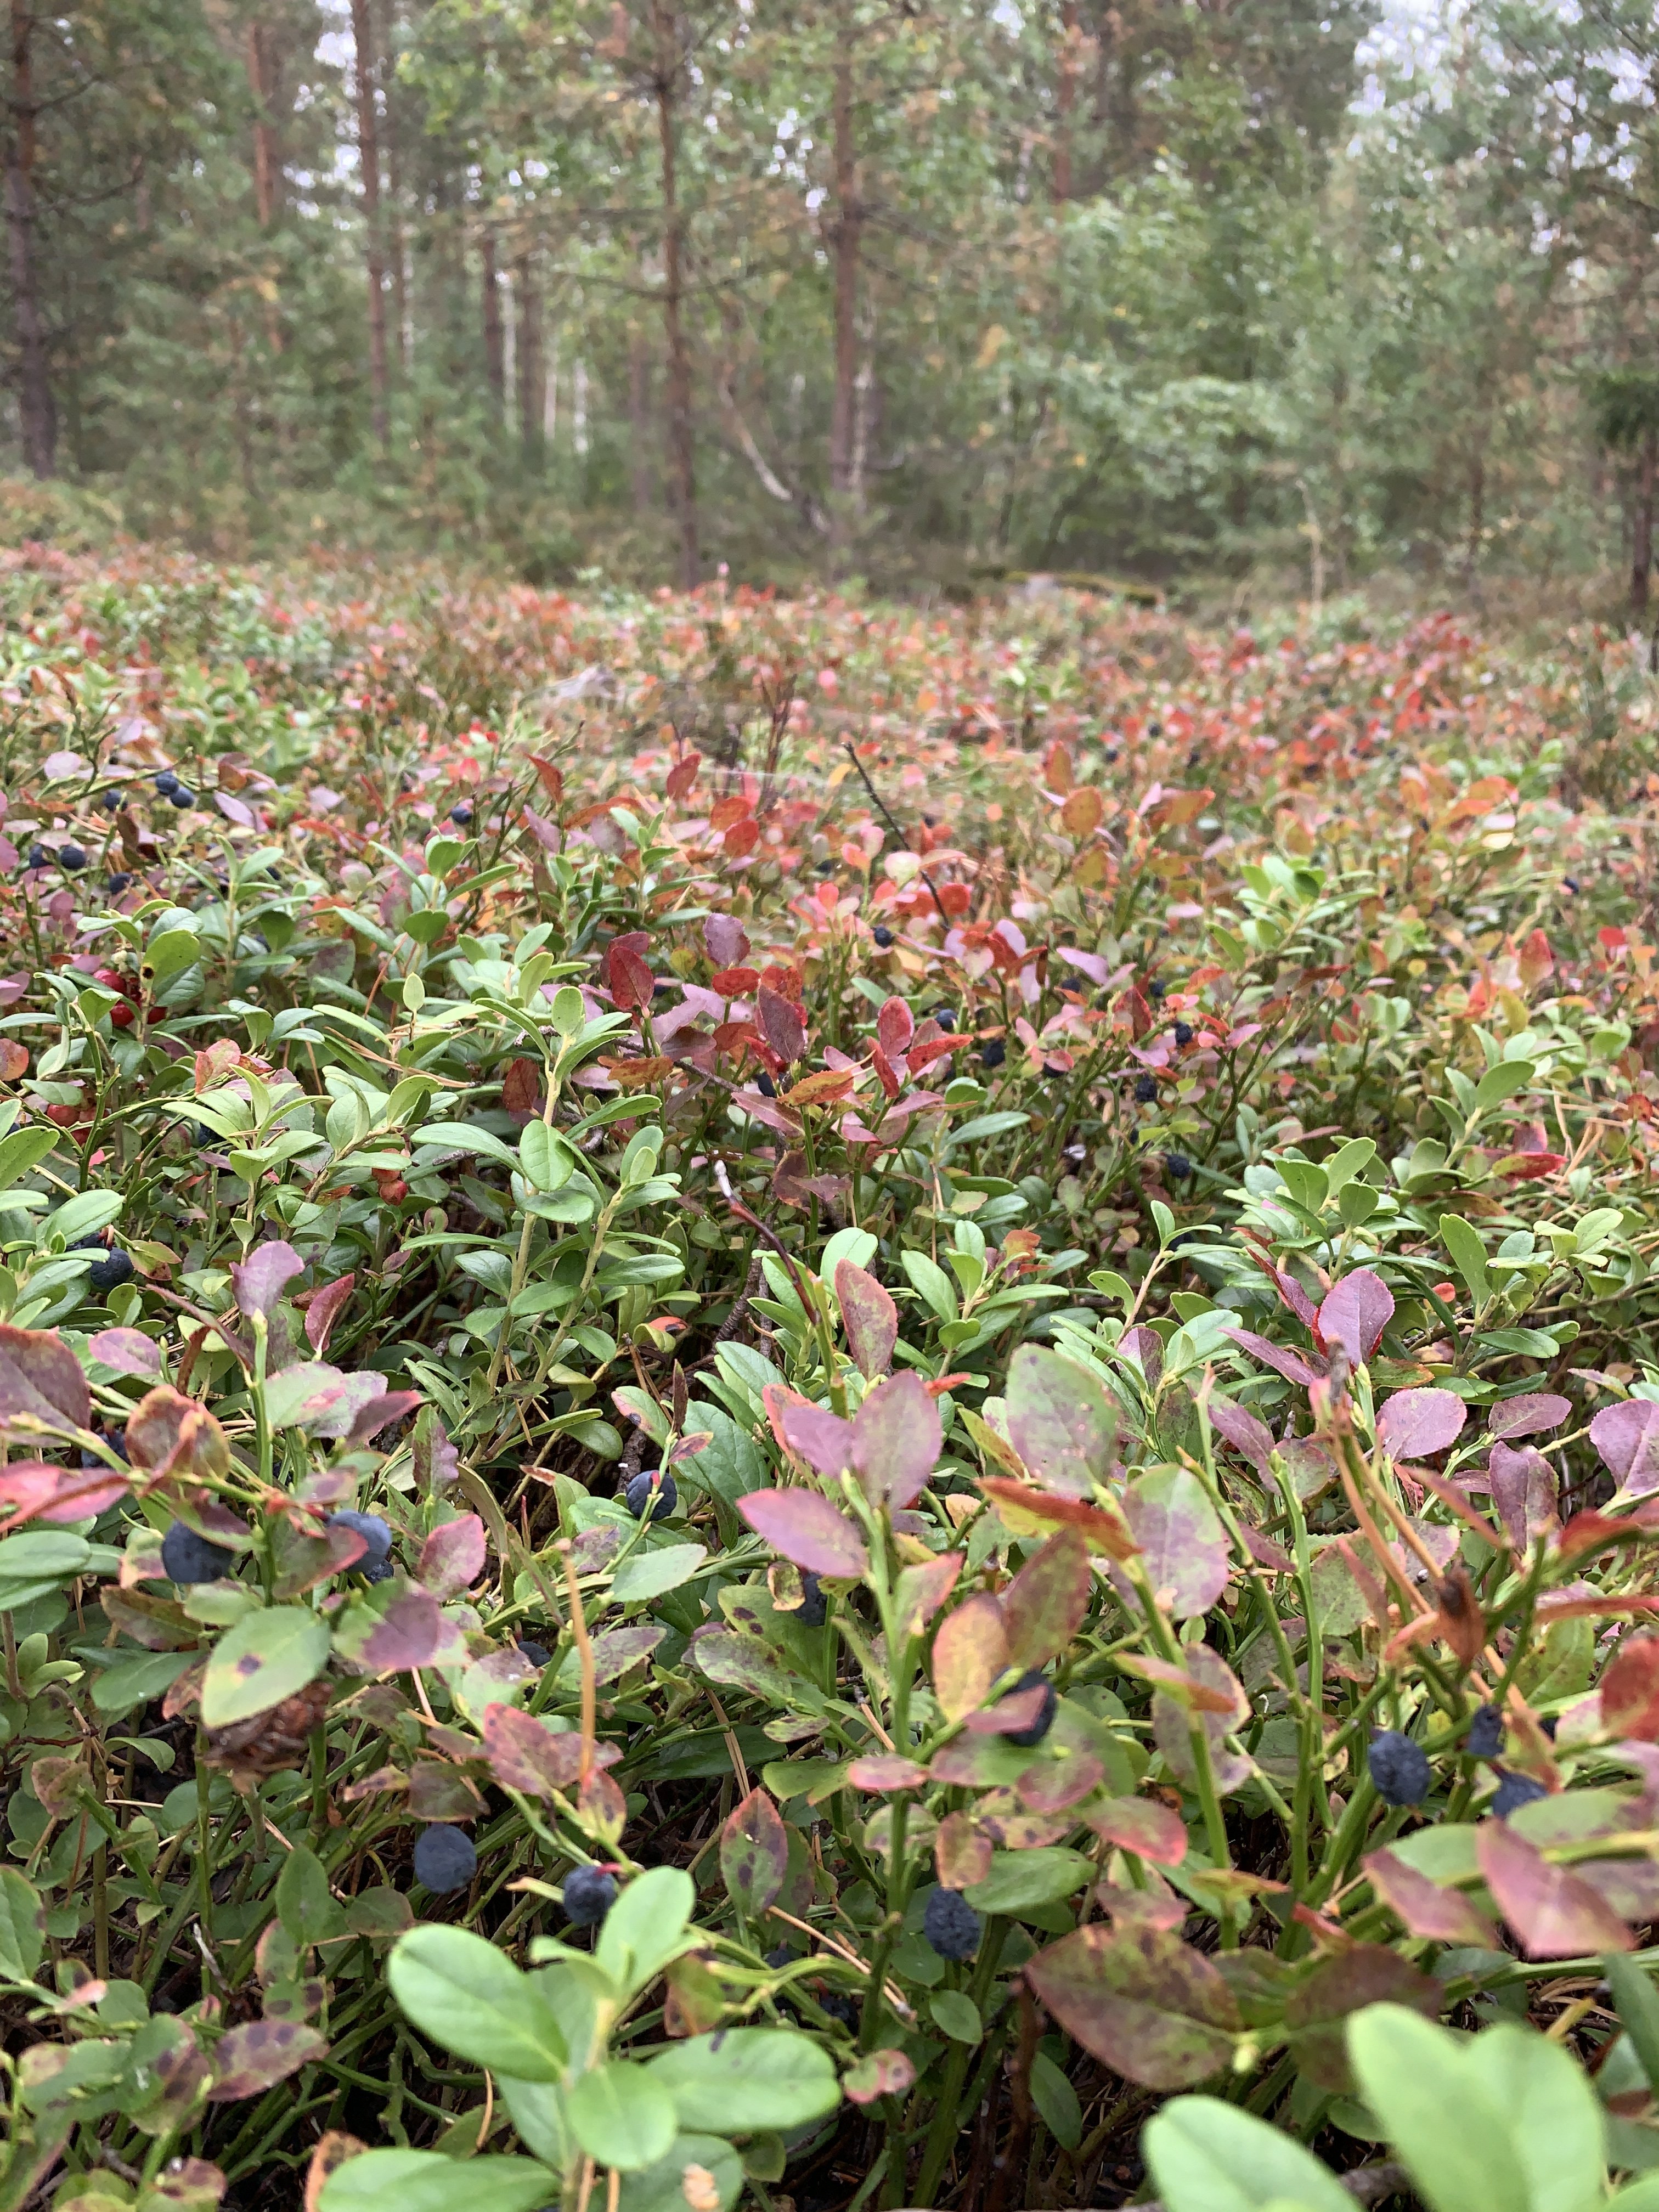 I reservatet växer blåbärs- och lingonrisen tätt.